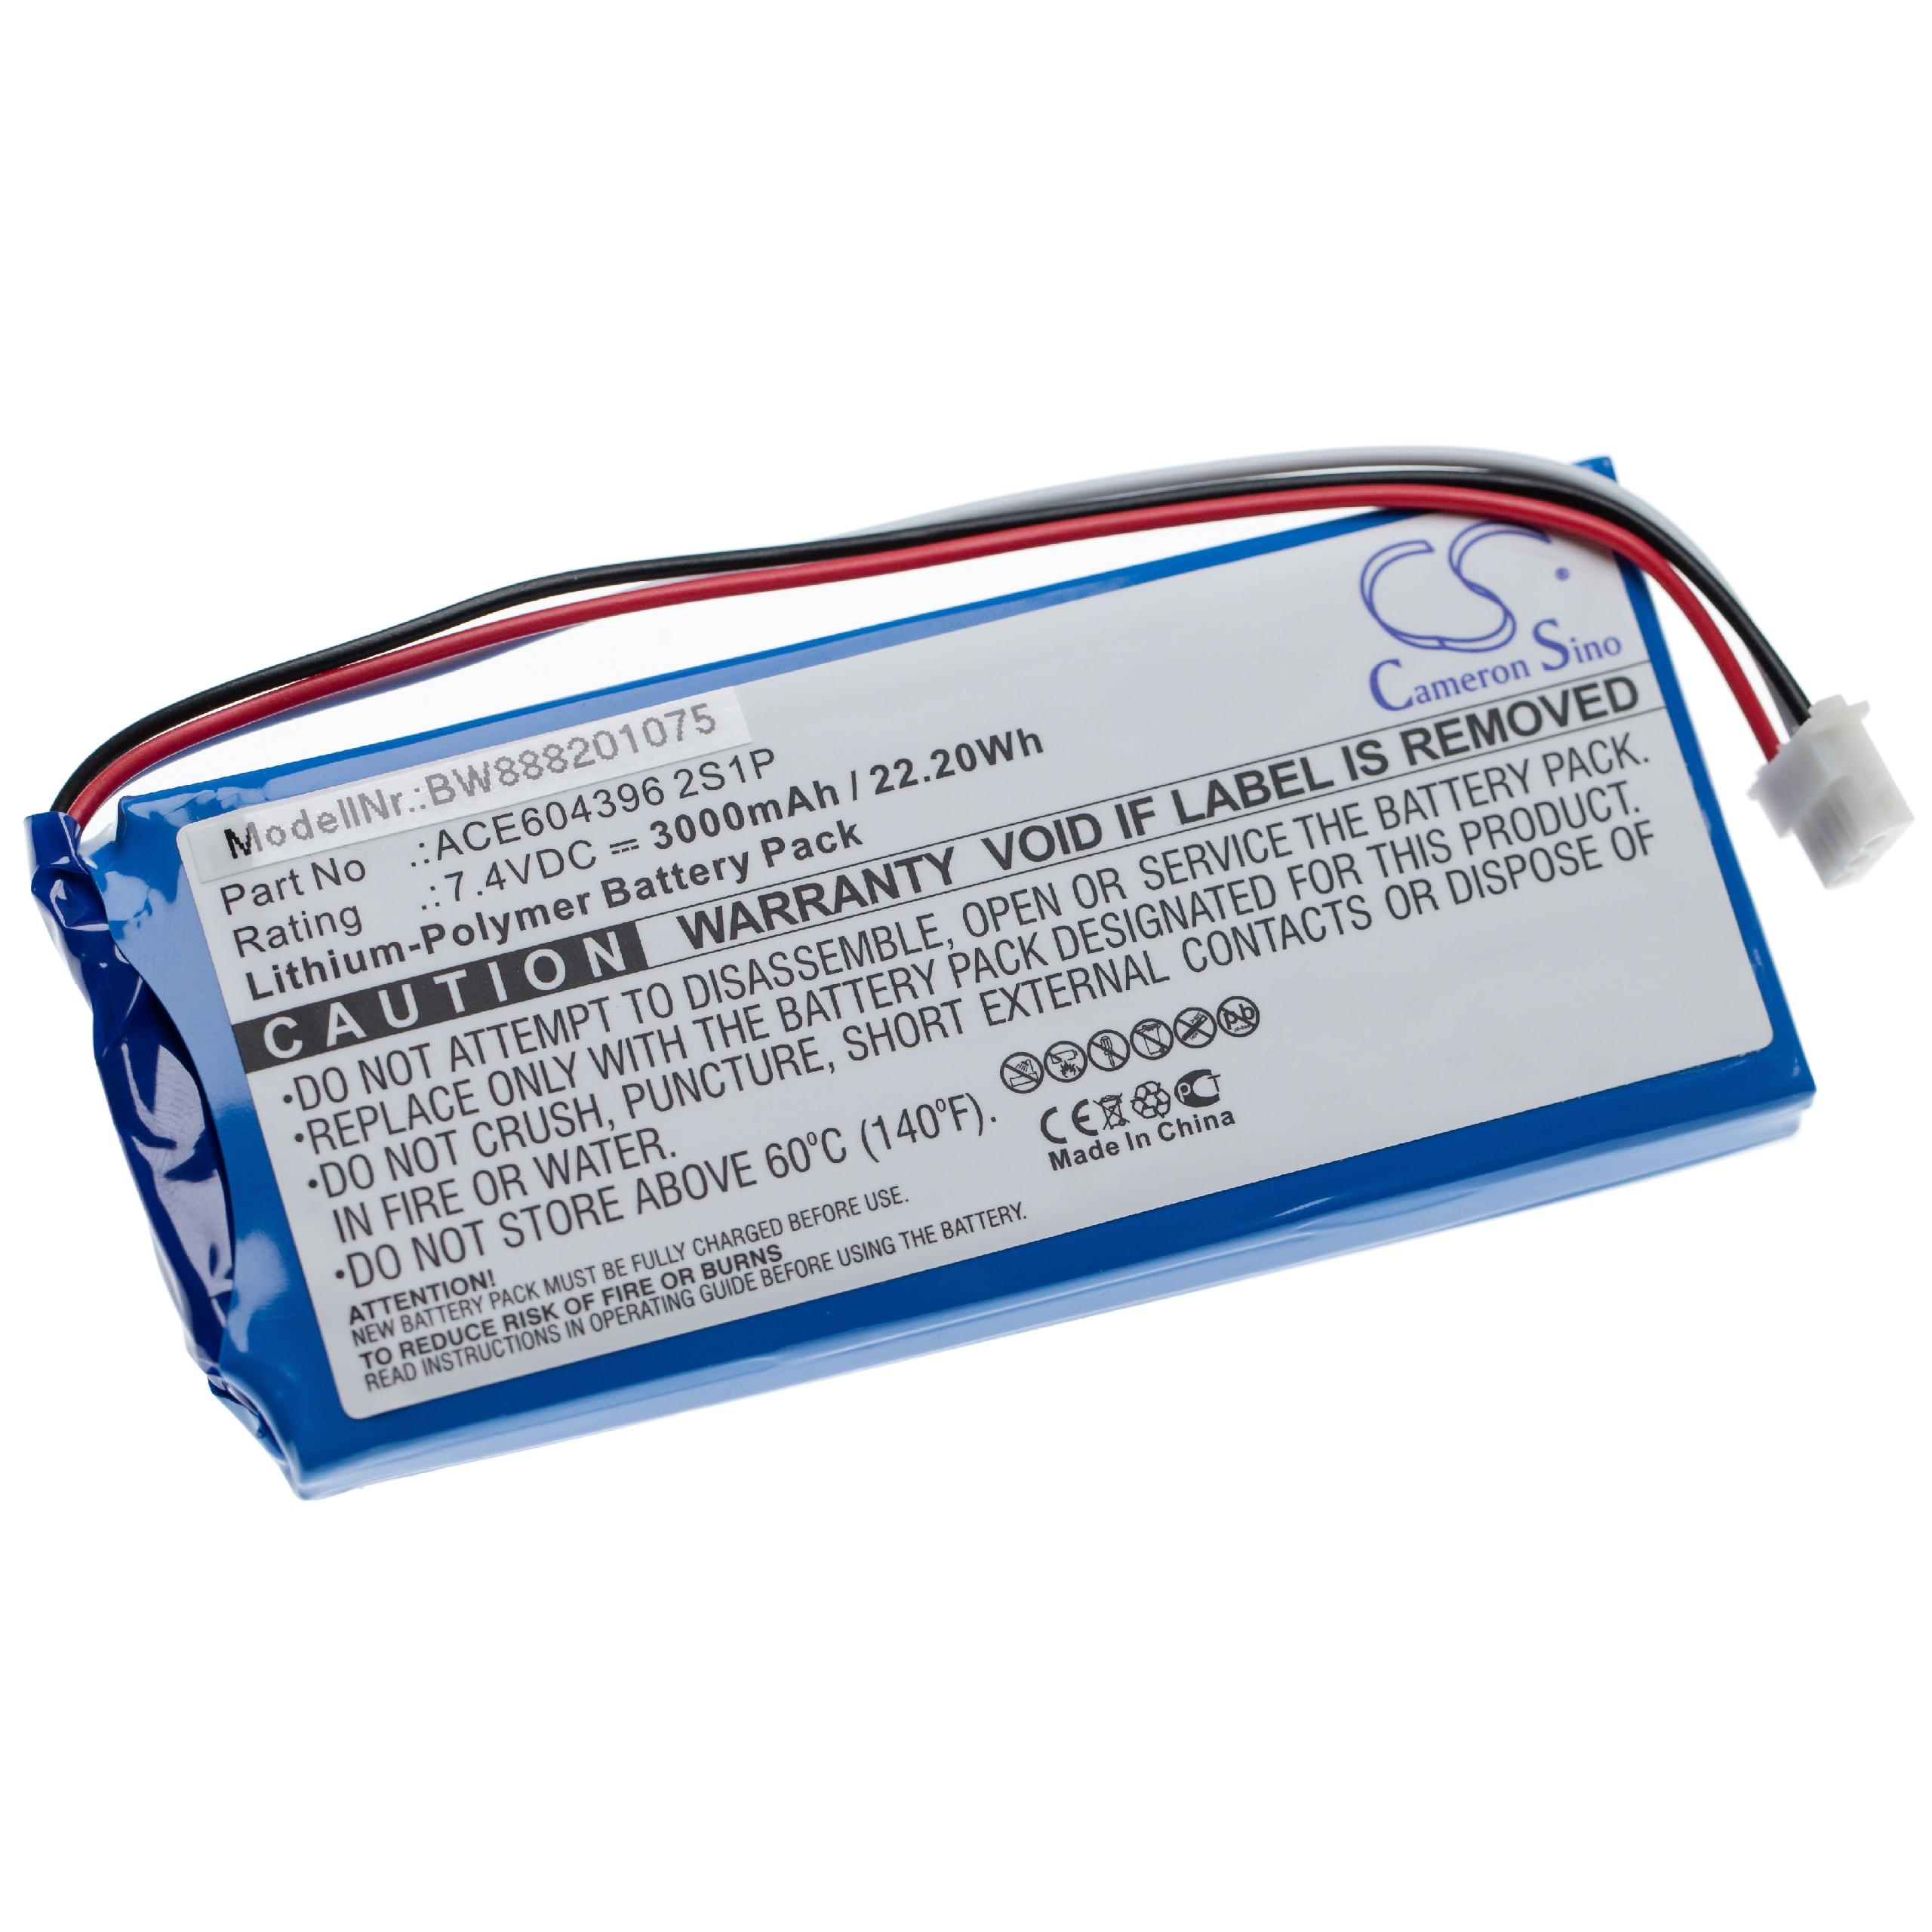 Batterie remplace Aaronia E-0205, ACE604396 2S1P pour outil de mesure - 3000mAh 7,4V Li-polymère